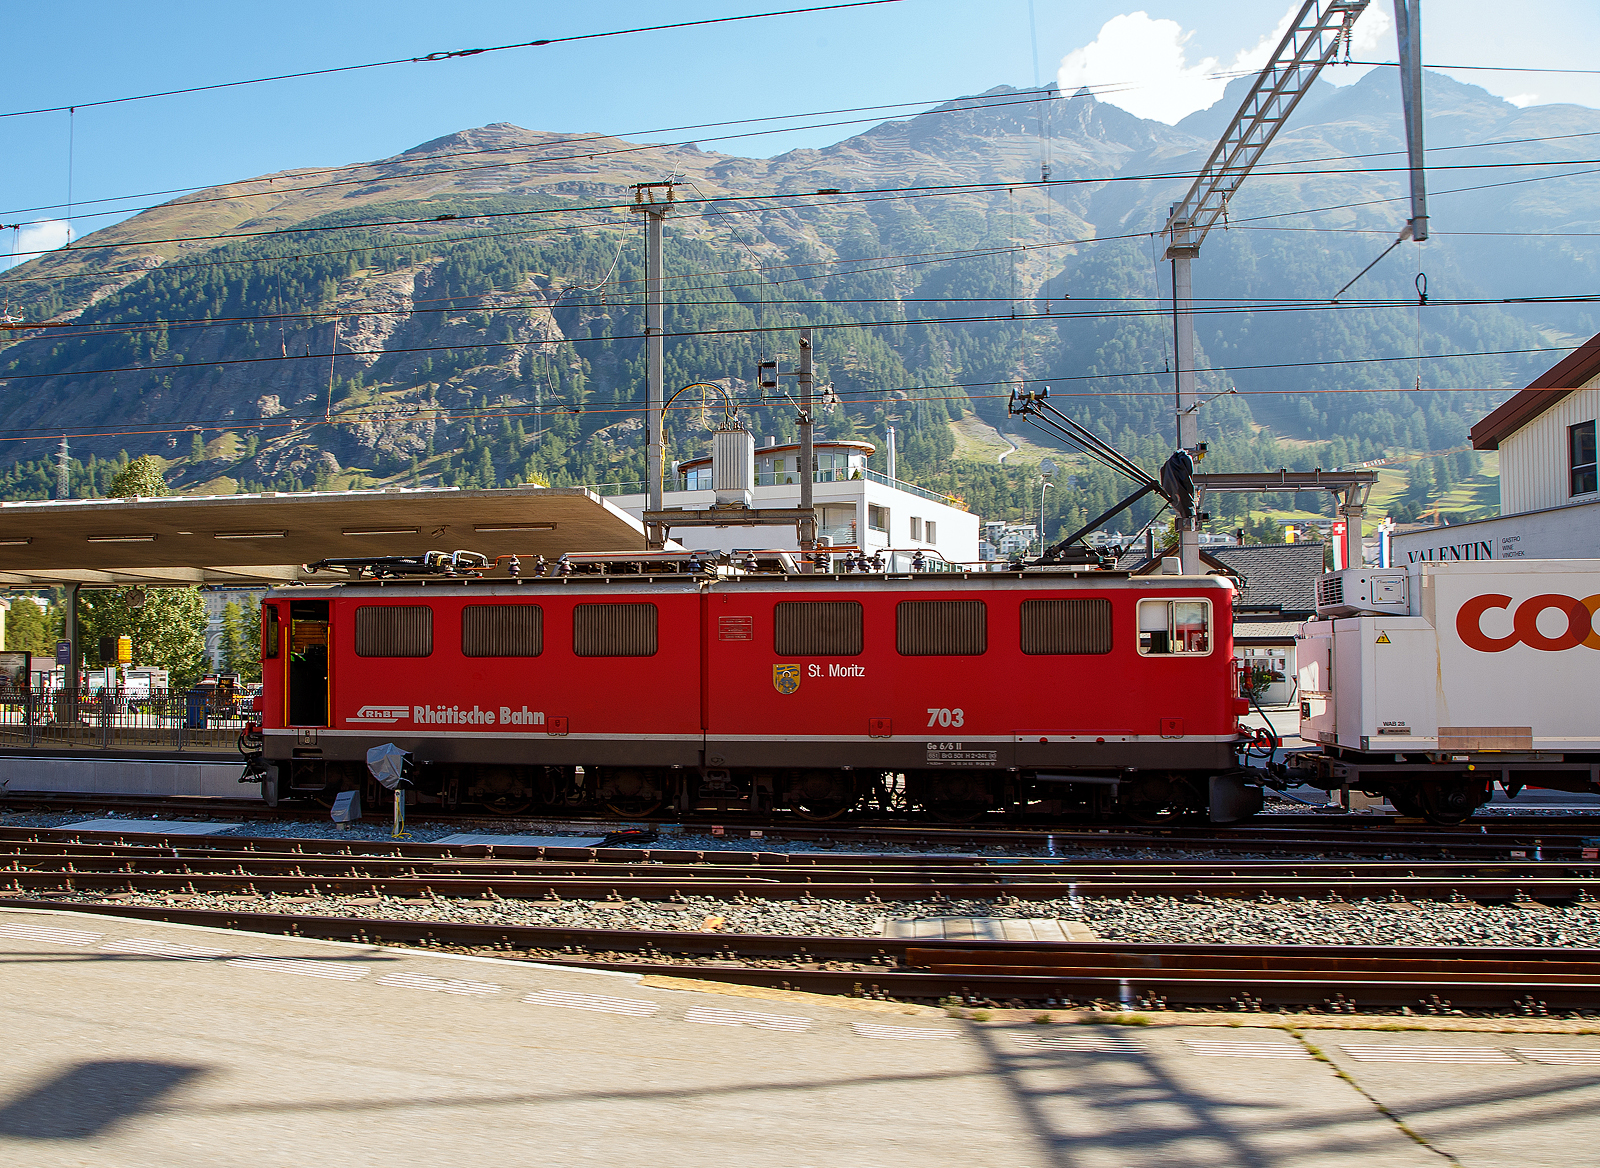 Die RhB Ge 6/6 II - 703 „St. Moritz“ steht am 06.09.2021 mit einem Gterzug im Bahnhof Samedan. Leider ist die RhB Ge 6/6 II – 703 auch schon Geschichte, sie wurde am 14. Juni 2022 in Chur abgebrochen (verschrottet). Auch zwei weitere (701 und 704) wurden bereits abgebrochen, die anderen vier Loks sind ausrangiert und wurden abgestellt. Nur die 707 „Scuol“ ist als historische Lok vorgesehen und z.Z. in Samedan abgestellt.

Die Ge 6/6 II ist/war eine schwere Elektrolokomotive der Rhtischen Bahn (RhB). Die sechsachsigen Maschinen (Achsformel Bo'Bo'Bo') wurden meistens im Gterzugdienst eingesetzt.

Zur Verstrkung des Lokomotivparks bestellte die RhB Mitte der 50er Jahre des vergangenen Jahrhunderts bei der schweizerischen Industrie eine leistungsstarke sechsachsige Gelenklokomotive. Zahlreiche Komponenten dieser Fahrzeuge mit geteiltem Lokomotivkasten wurden von der Ge 4/4 I bernommen. Mitte 1958 erfolgte die Auslieferung der ersten beiden Prototypen. Die folgende Serie von fnf weiteren Fahrzeugen wurde 1965, mit leicht genderter Front ohne bergangstr, ausgefhrt. Diese wurde bei den beiden Prototypen 1968/69 zugeschweit. Ein Umbau der Front entsprechend der Serie 703 - 707 erfolgte jedoch erst Ende der 80er Jahre. Ab 1985 wurden die ersten Maschinen umlackiert und trugen seitdem eine rote Lackierung. 1998 erfolgte, wie zuvor schon bei den Ge 4/4 I, ein Austausch der Scherenstromabnehmer durch moderne Einholmstromabnehmer.

ber weite Jahre wurden diese Fahrzeuge hauptschlich vor den Schnellzgen zwischen Chur und St. Moritz eingesetzt. Diese Aufgabe haben inzwischen die modernen Umrichterlokomotiven Ge 4/4 III bernommen. So sieht man sie heute meistens im Gterzugdienst.

Technisch entsprechen die Maschinen dem damaligen Stand: (Niederspannungs-) Stufenschalter und Einphasen-Reihenschlussmotoren. Die ueren beiden Drehgestelle und die Fahrmotoren knnen mit den Ge 4/4 I ausgetauscht werden. Das Kastengelenk zwischen den beiden Lokhlften erlaubt nur vertikale Bewegungen. 

TECHNISCHE DATEN:
Bezeichnung: Ge 6/6 II
Betriebsnummern: 701 – 707
Anzahl Fahrzeuge: 7
Baujahre: 1958 (701 und 702), 1965 (703 bis 707)
Hersteller Kasten und Drehgestelle: SLM
Hersteller Elektrik: BBC, MFO

Spurweite: 1.000 mm
Achsanordnung: Bo'Bo'Bo'
Lnge ber Puffer: 14.500 mm
Breite: 2.650 mm
Drehzapfenabstand: 8.600 mm (Der ueren Drehgestelle)
Gesamtradstand: 11.100 mm
Achsabstand im Drehgestell: 2.500 mm
Triebraddurchmesser (neu): 1.070 mm
Dienstgewicht:65,0 t
Hchstgeschwindigkeit: 80 km/h
Anhngelast: bei 45 ‰ 205 t / bei 35 ‰ 280 t
Fahrleitungsspannung: 11 kV, AC 16,7 Hz
Anzahl Fahrmotoren: 6 Stck (Typ 8SW570)
Max. Leistung am Rad: 1.776 kW (2.414 PS)
Max. Zugkraft am Rad: 213,9 kN
Dauerzugkraft am Rad: 135,4 kN
Getriebebersetzung: 1 : 5,437
